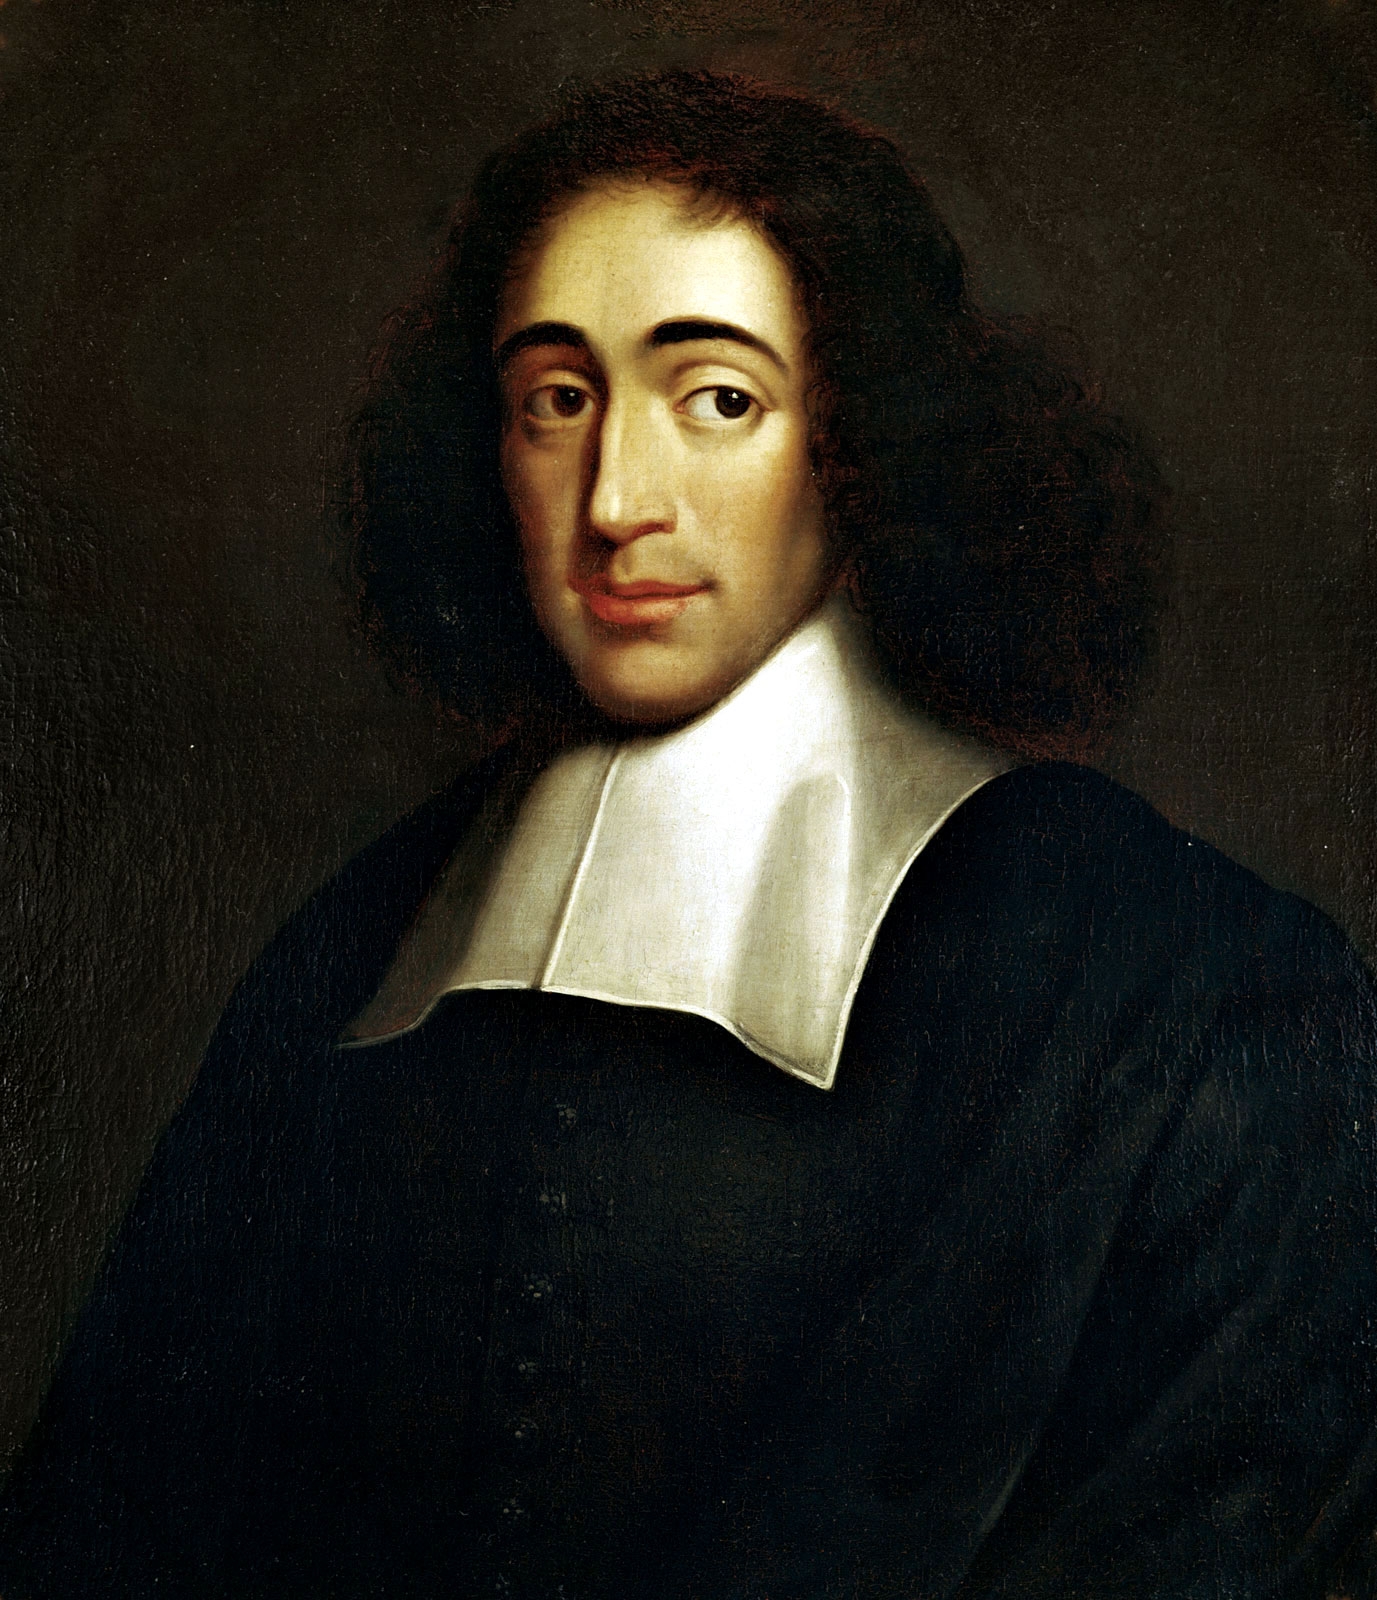 auteur Baruch Spinoza de la citation Il n'y a pas d'espoir sans être mis en scène, et aucune crainte, sans mâte d'espoir.